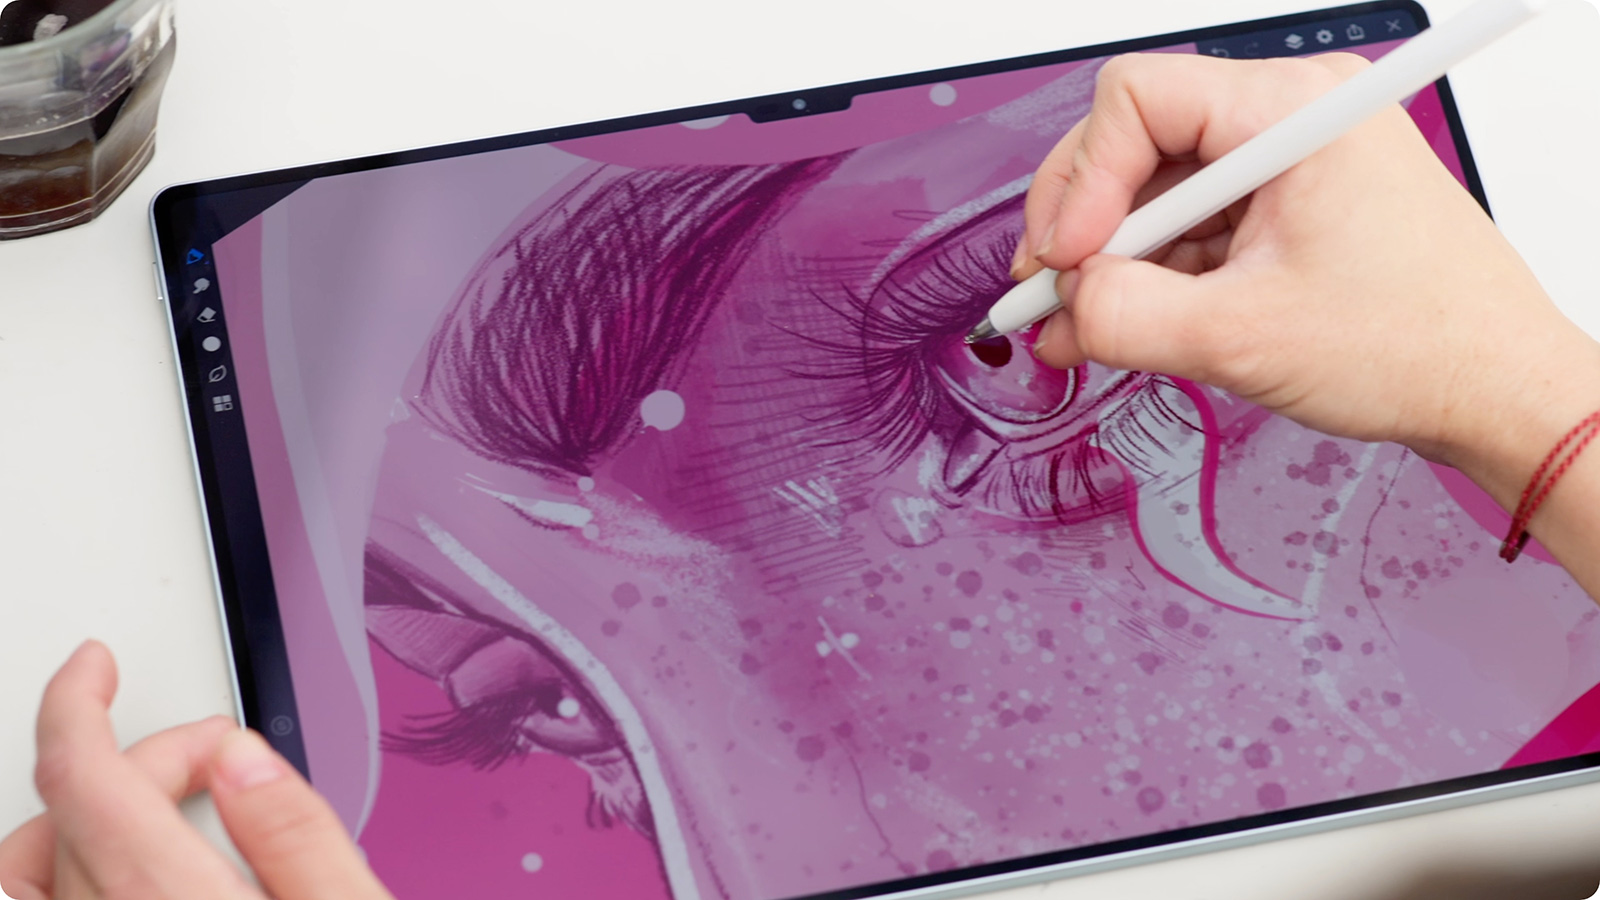 Huawei tabletler için yeni boyama uygulaması GoPaint'i tanıttı